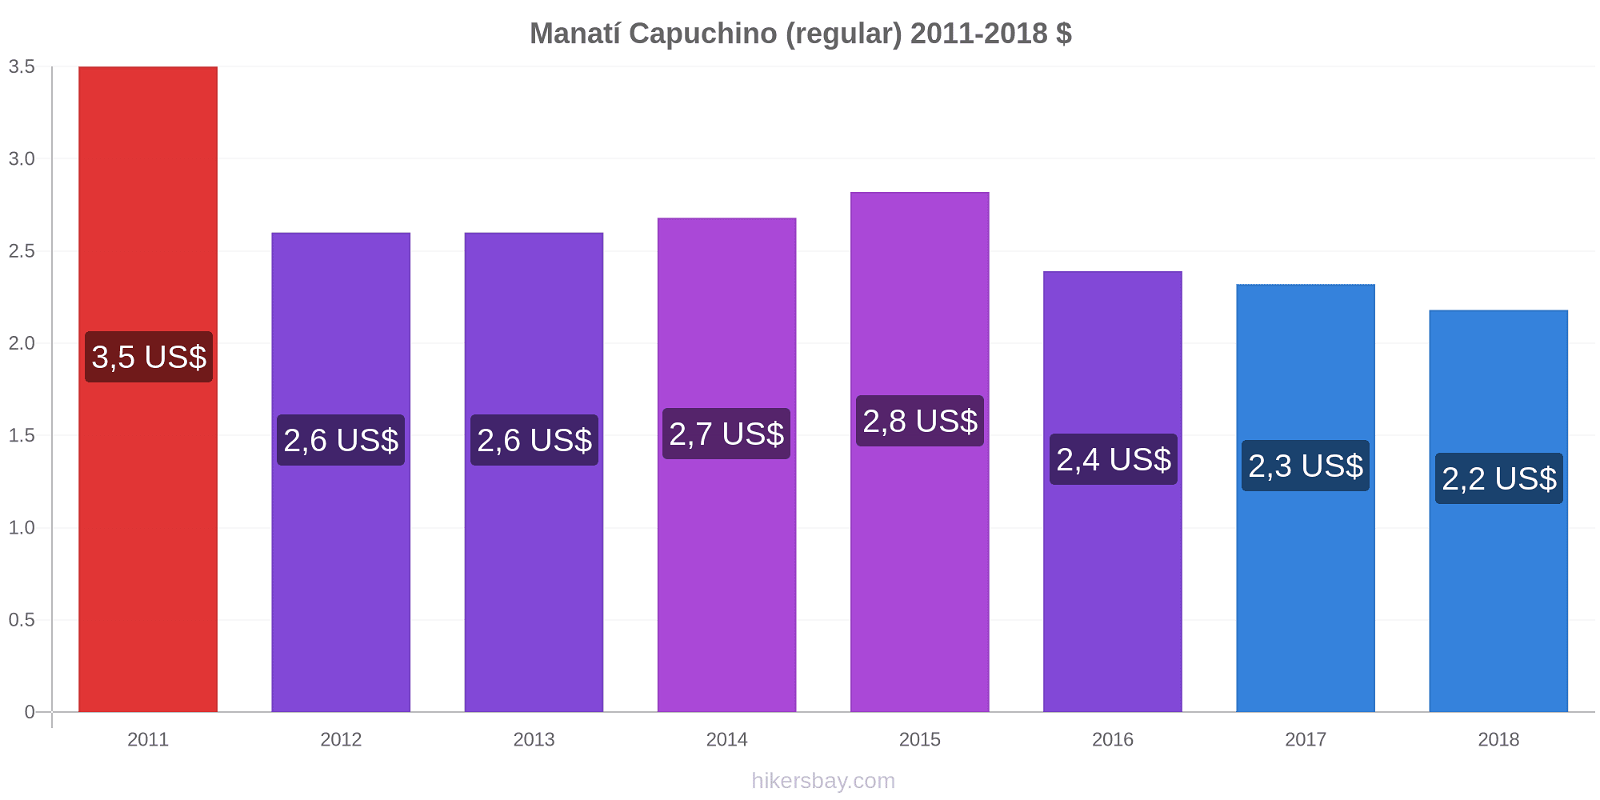 Manatí cambios de precios Capuchino (regular) hikersbay.com